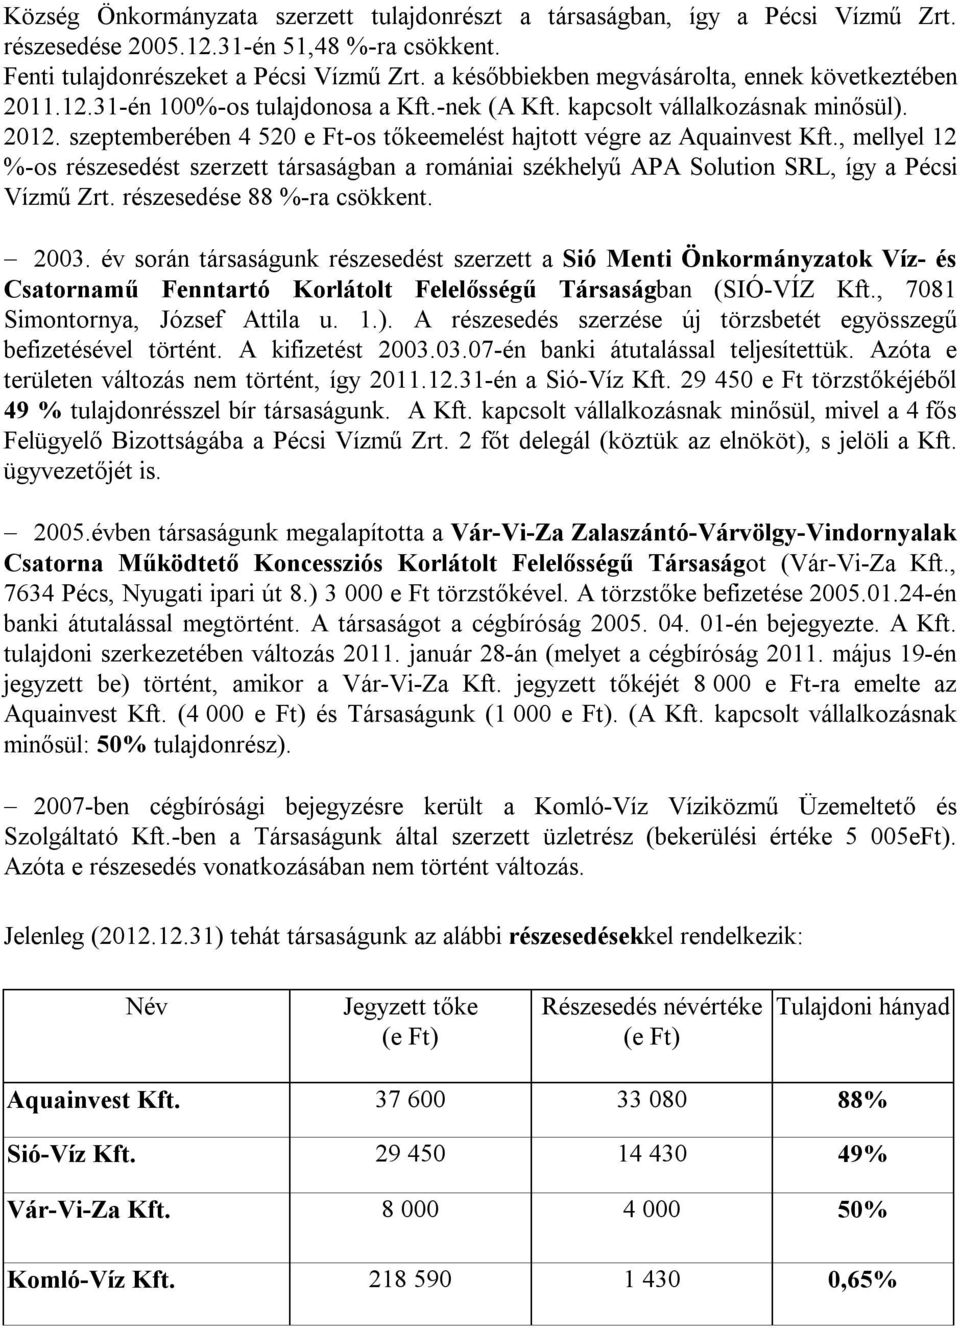 szeptemberében 4 520 e Ft-os tőkeemelést hajtott végre az Aquainvest Kft., mellyel 12 %-os részesedést szerzett társaságban a romániai székhelyű APA Solution SRL, így a Pécsi Vízmű Zrt.